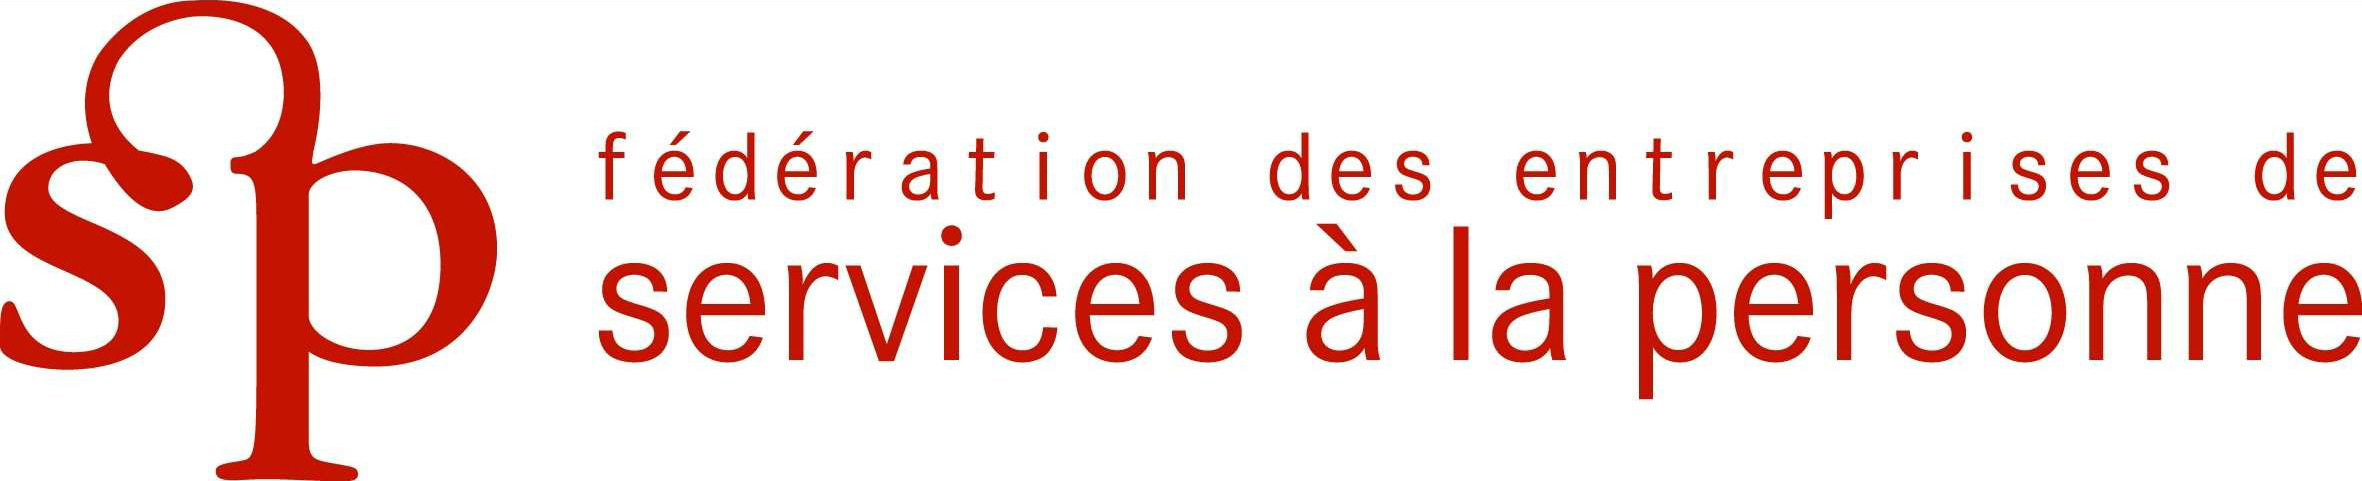 logo_federation_des_entreprises_de_services_a_la_personne 